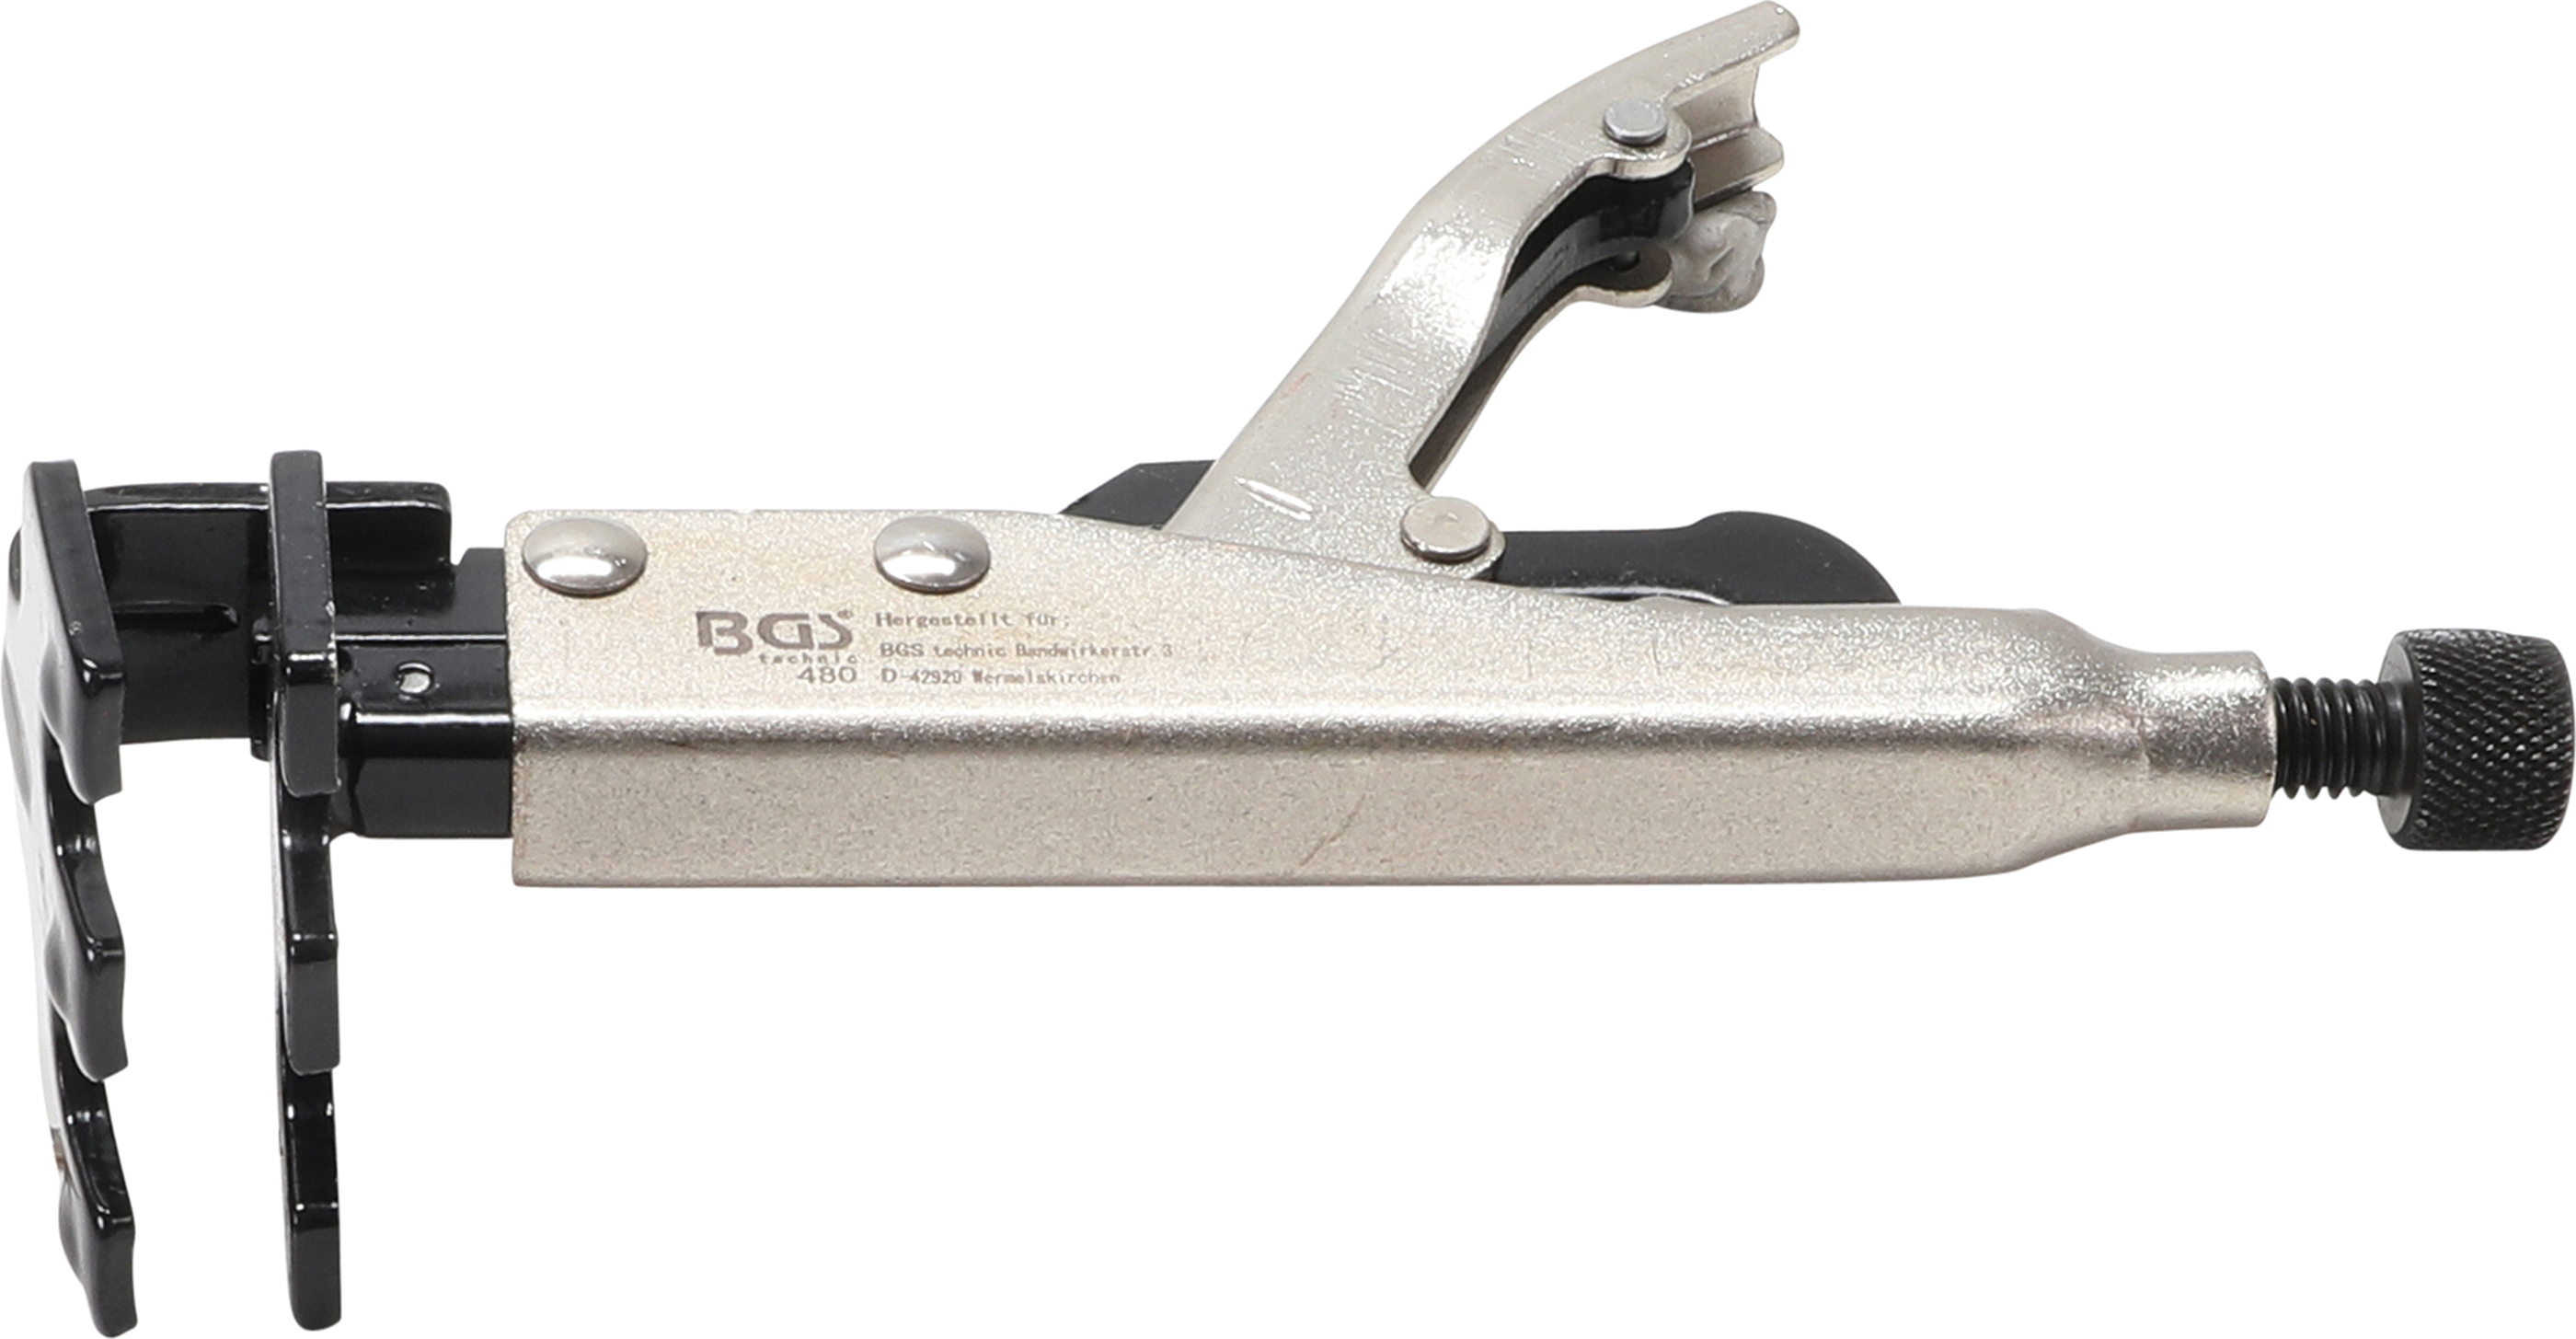 BGS 480 Cleste autoblocant pentru lucrari de tinichigerie, lungime  195mm